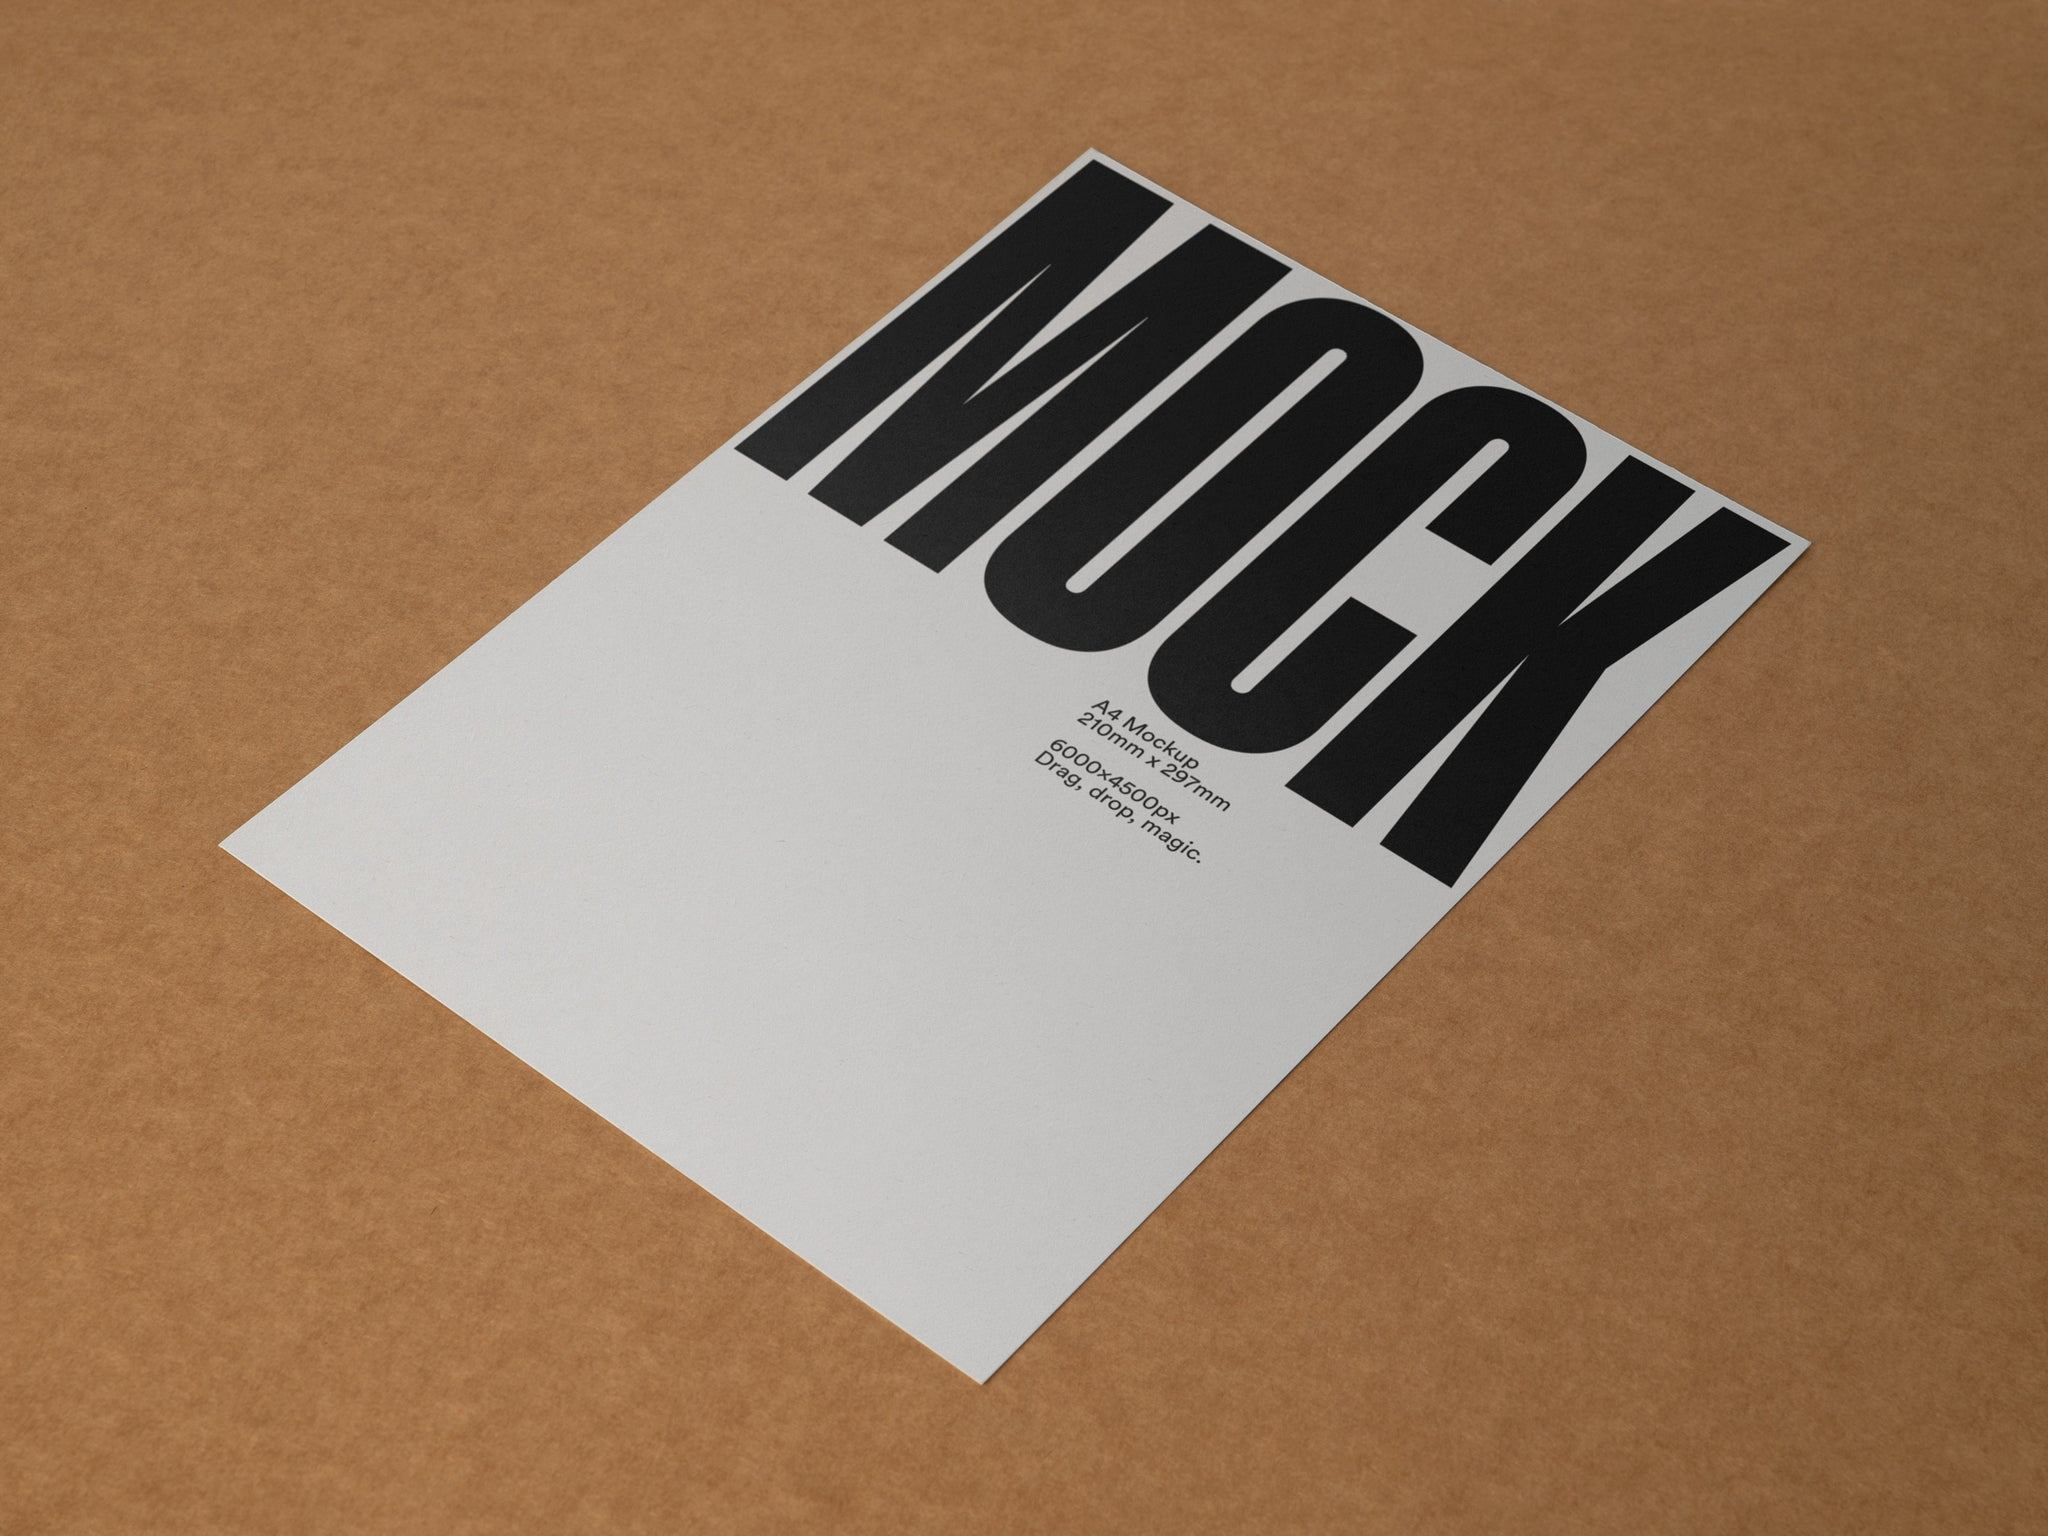 Poster Mockup / A4 Letterhead Mockup Angle